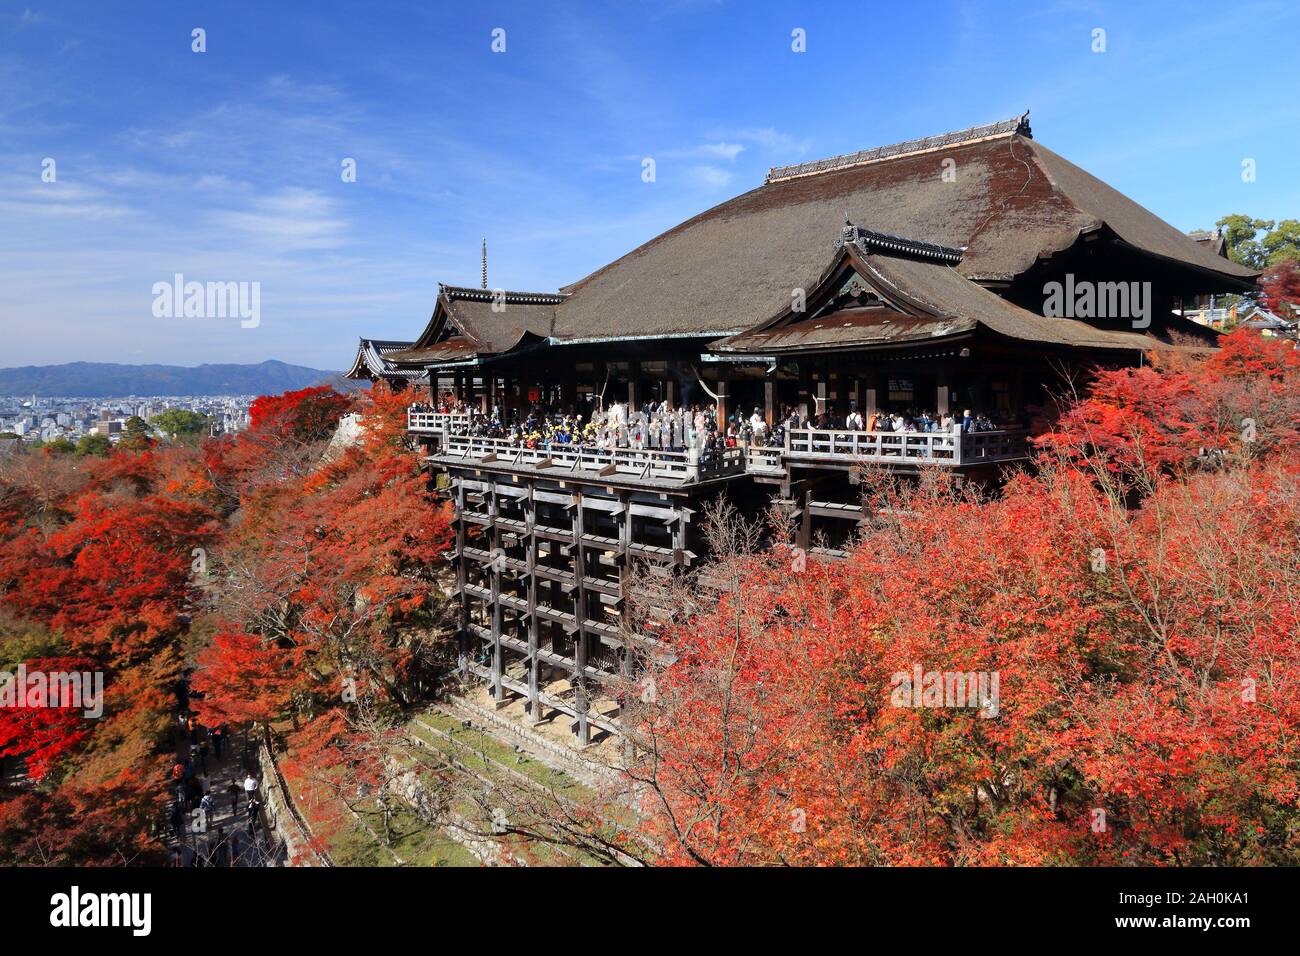 KYOTO, Japan - 26 November, 2016: die Menschen besuchen Kiyomizu-dera Tempel in Kyoto, Japan. Kyoto hat 17 UNESCO-Welterbestätten. Stockfoto